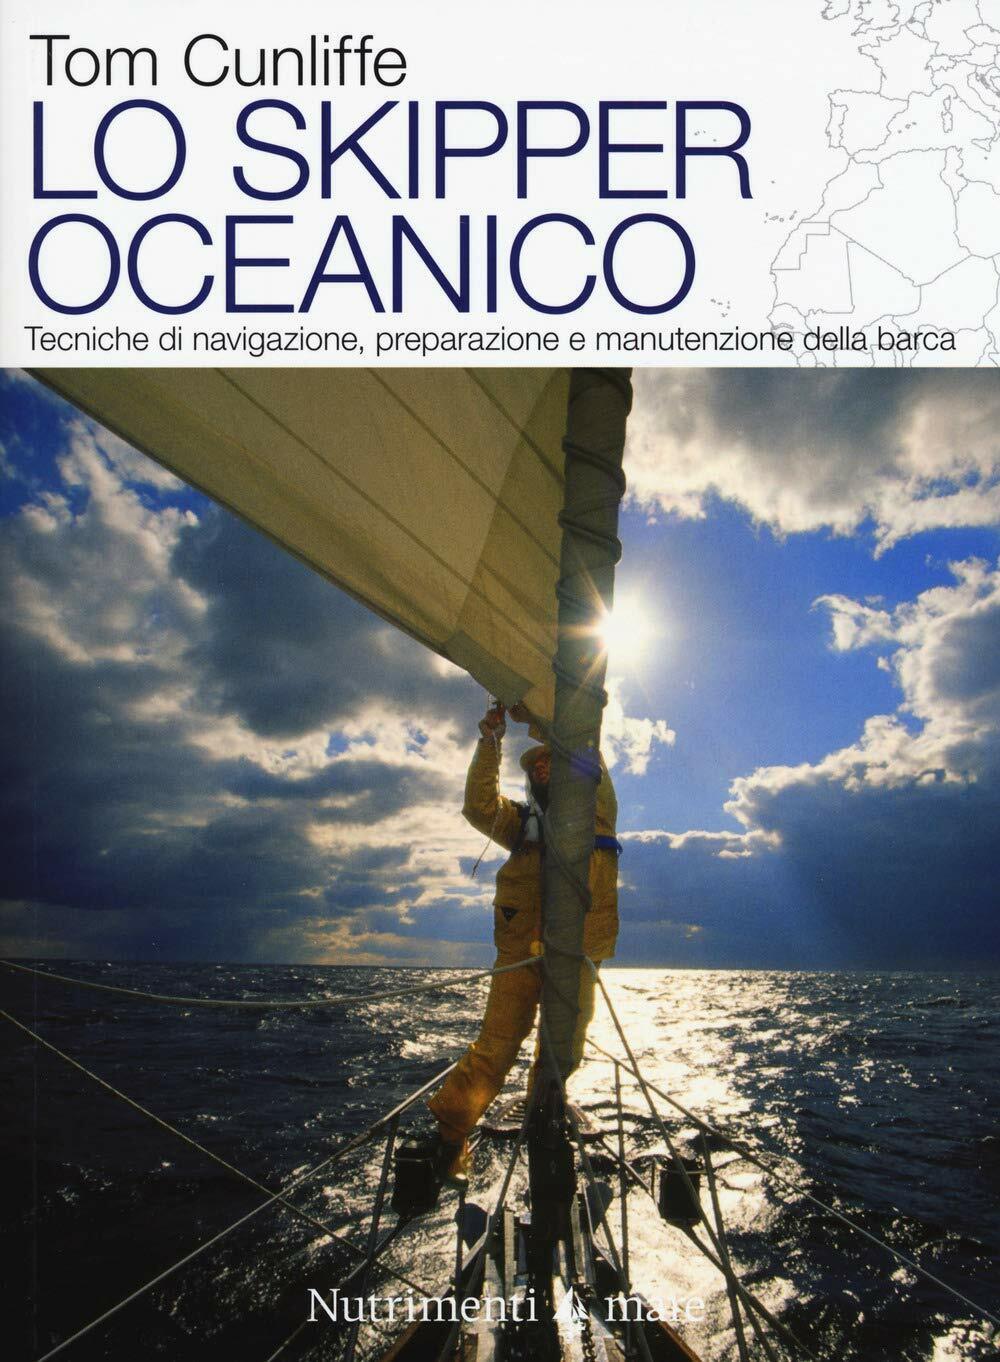 Lo skipper oceanico - Tom Cunliffe - Nutrimenti, 2018